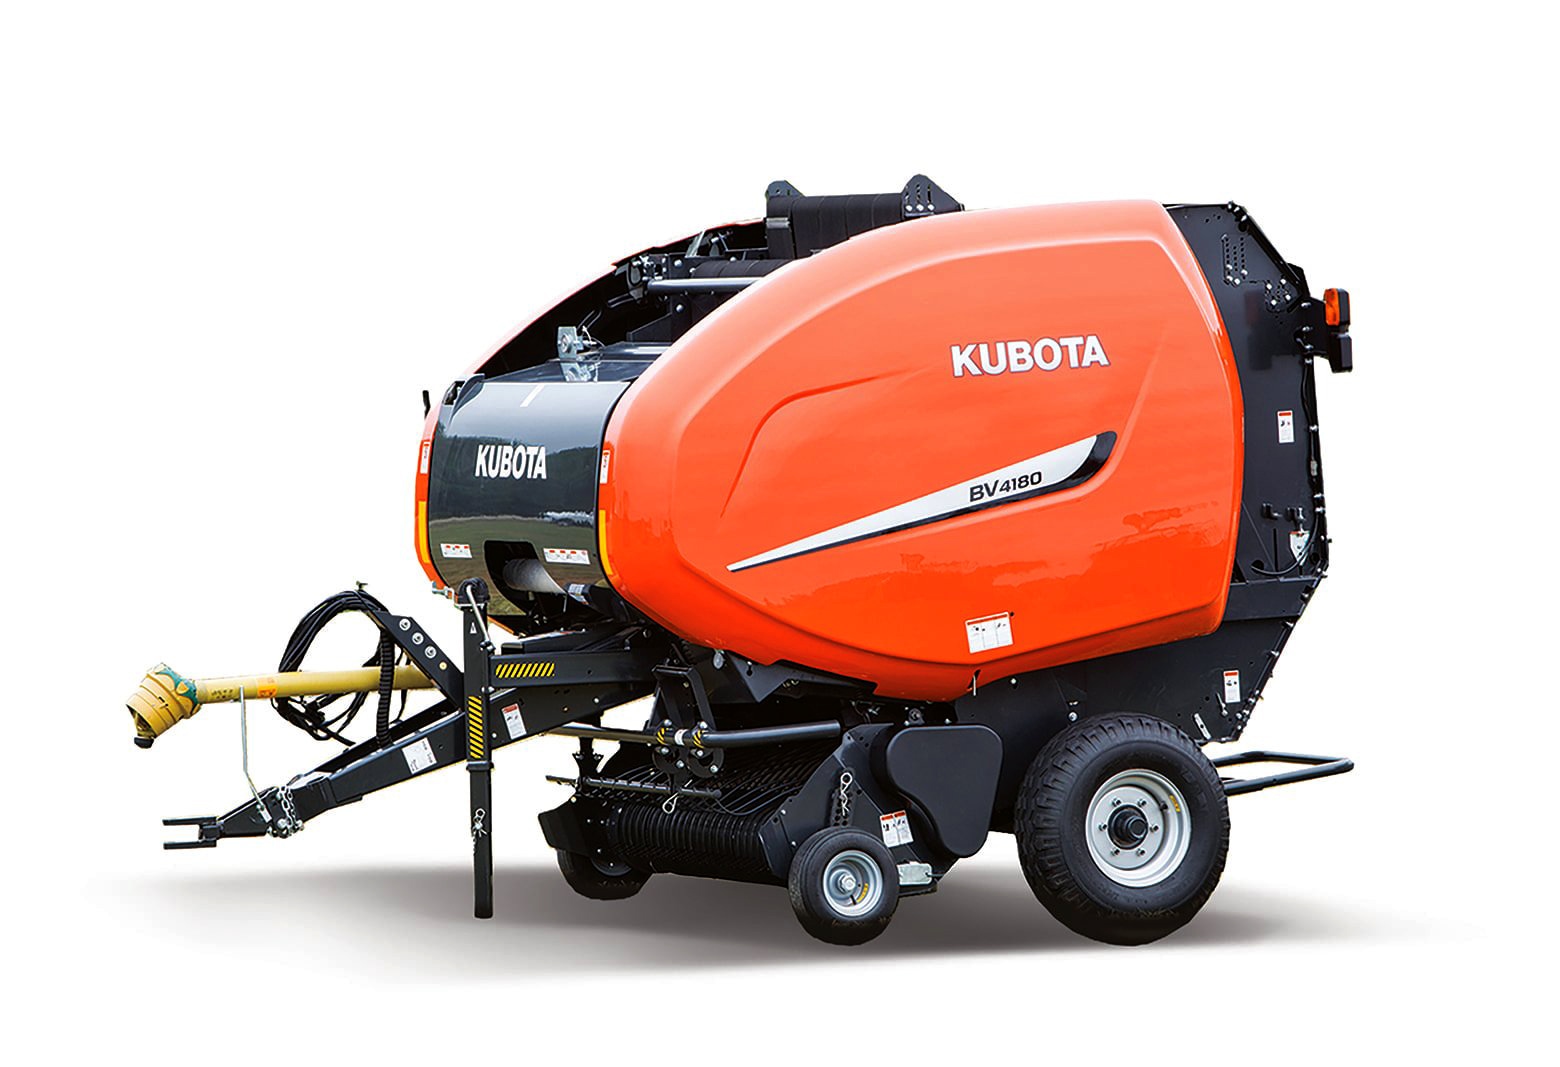 Kubota | Farm Equipment, Construction Equipment, Mowers, UTV